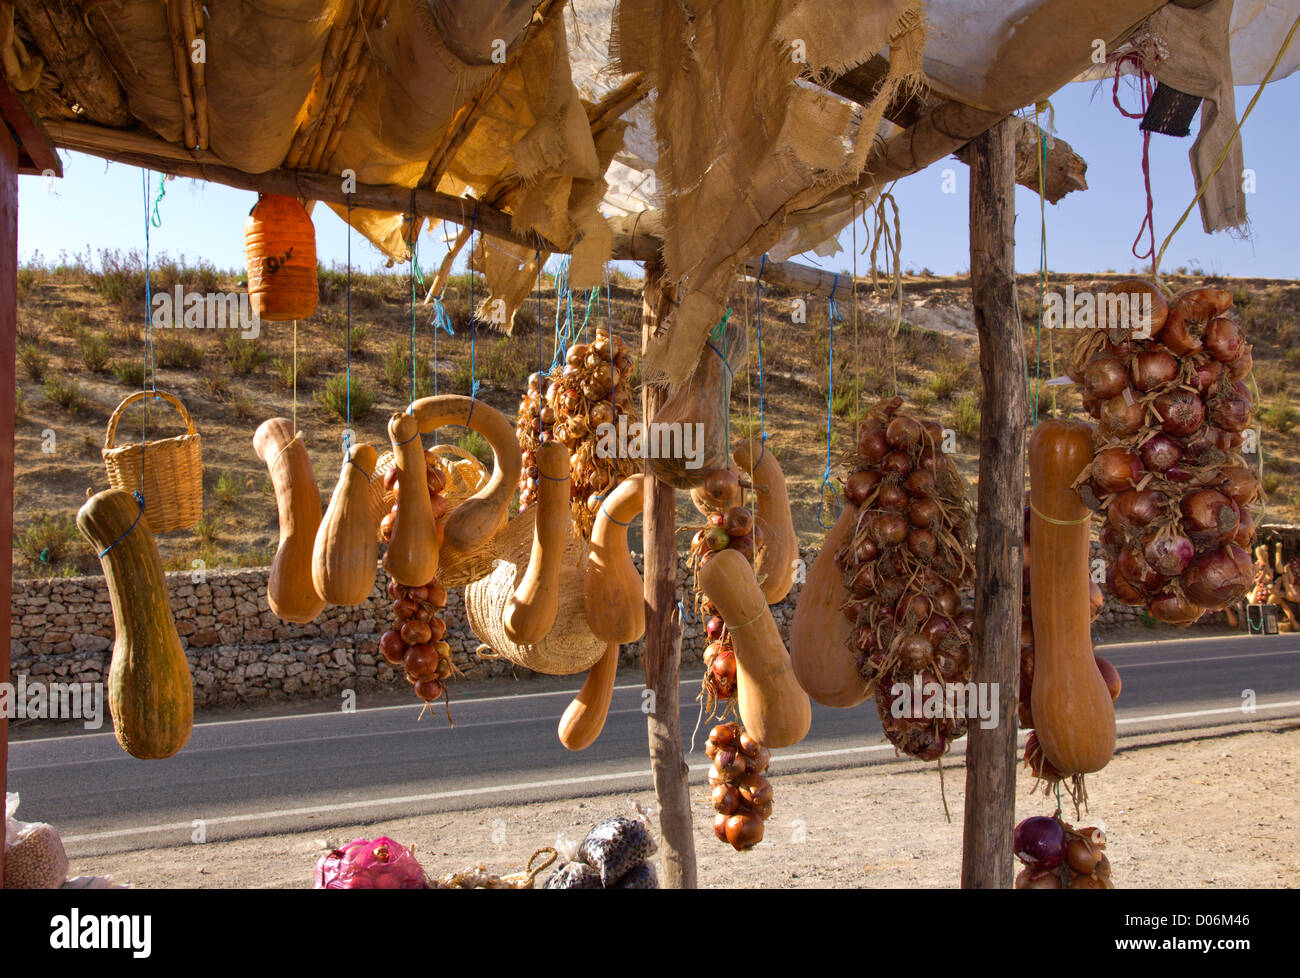 Calabazas y cebollas colgando para la venta en Marruecos. Foto de stock